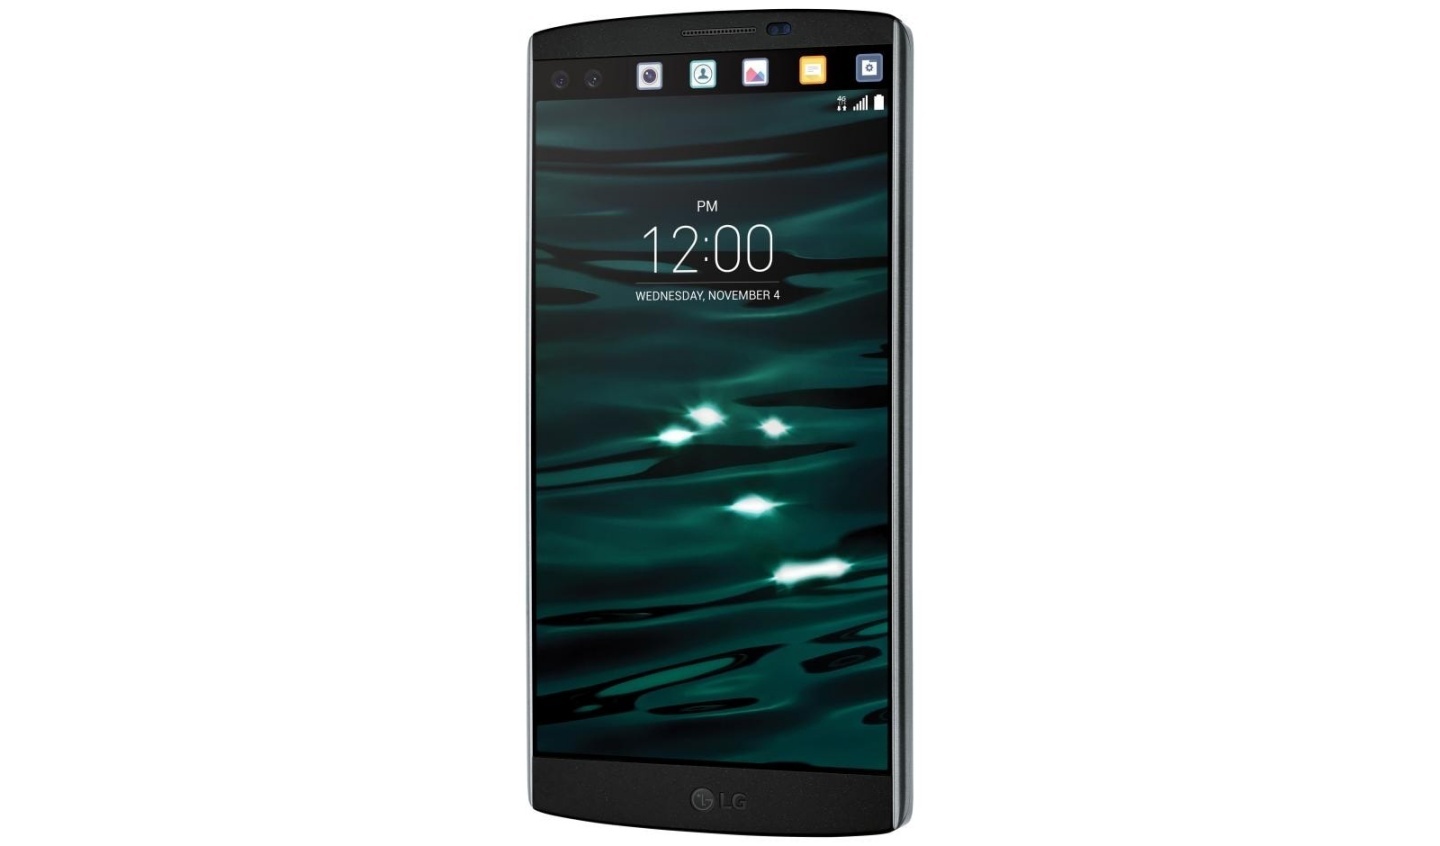 動態島對 Android 用戶來說不稀奇？走入歷史的『 LG V10 』副螢幕設計其實也超有趣！